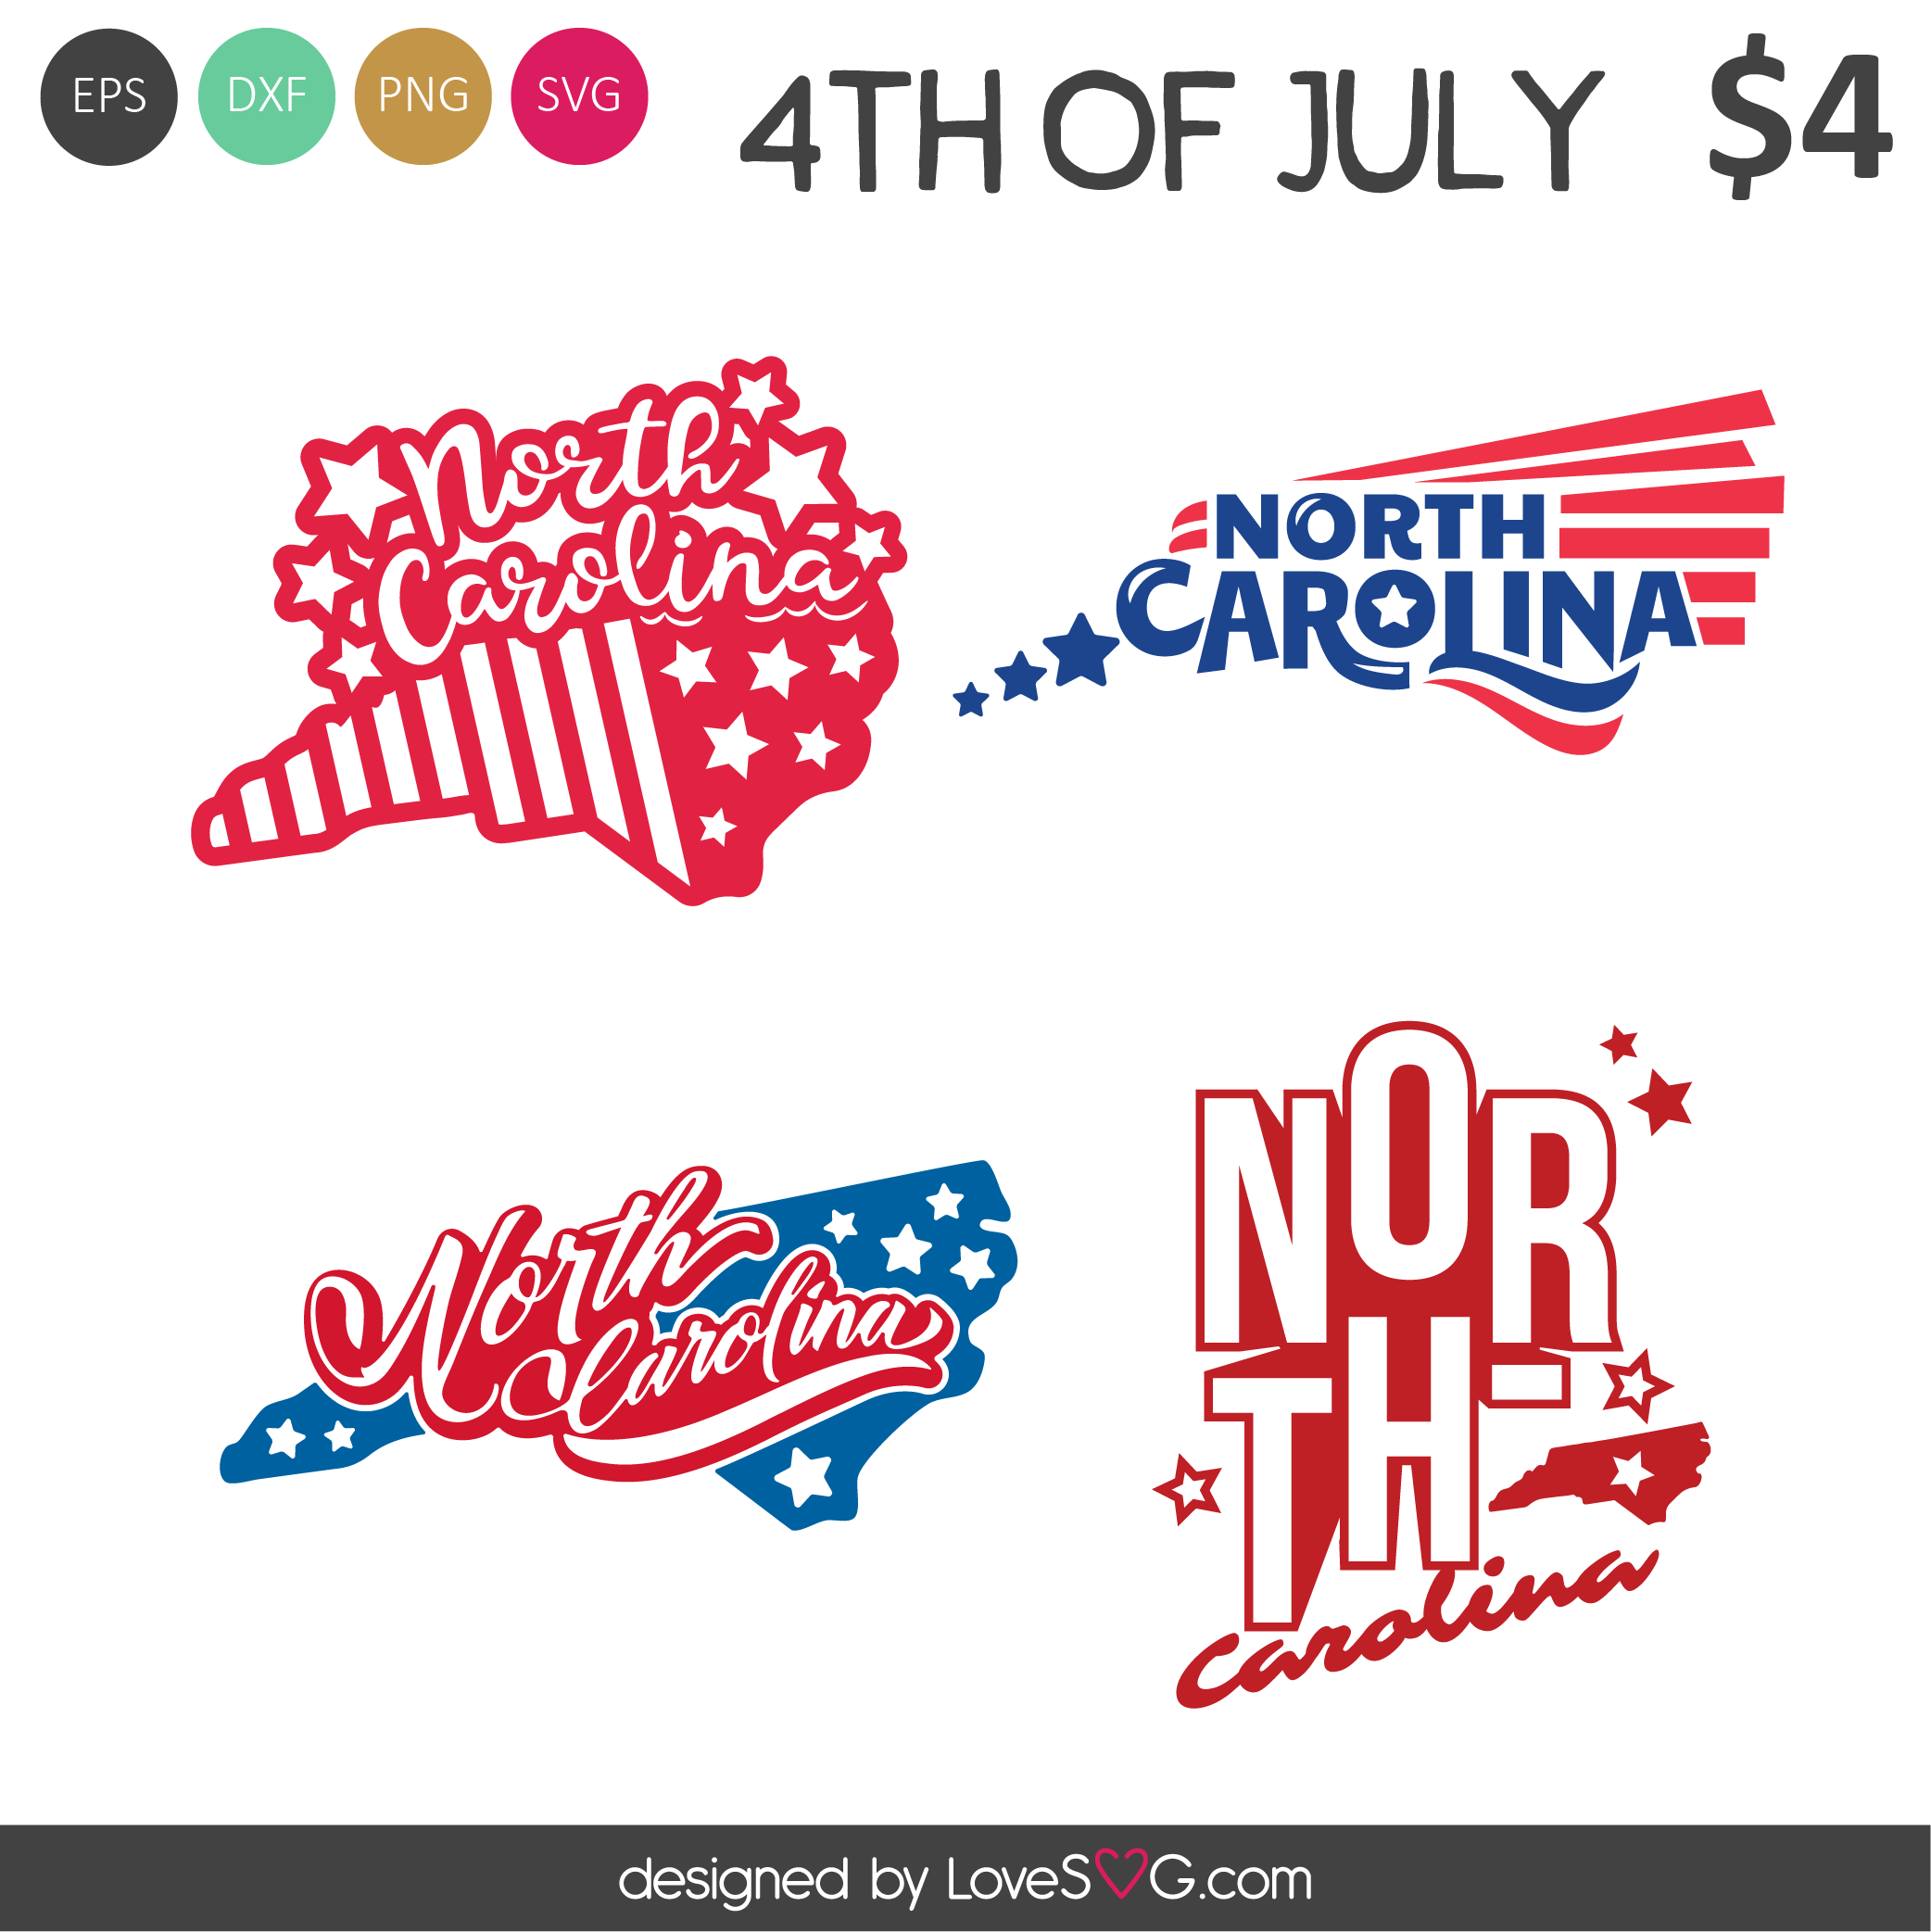 North Carolina SVG Cut Files - Lovesvg.com